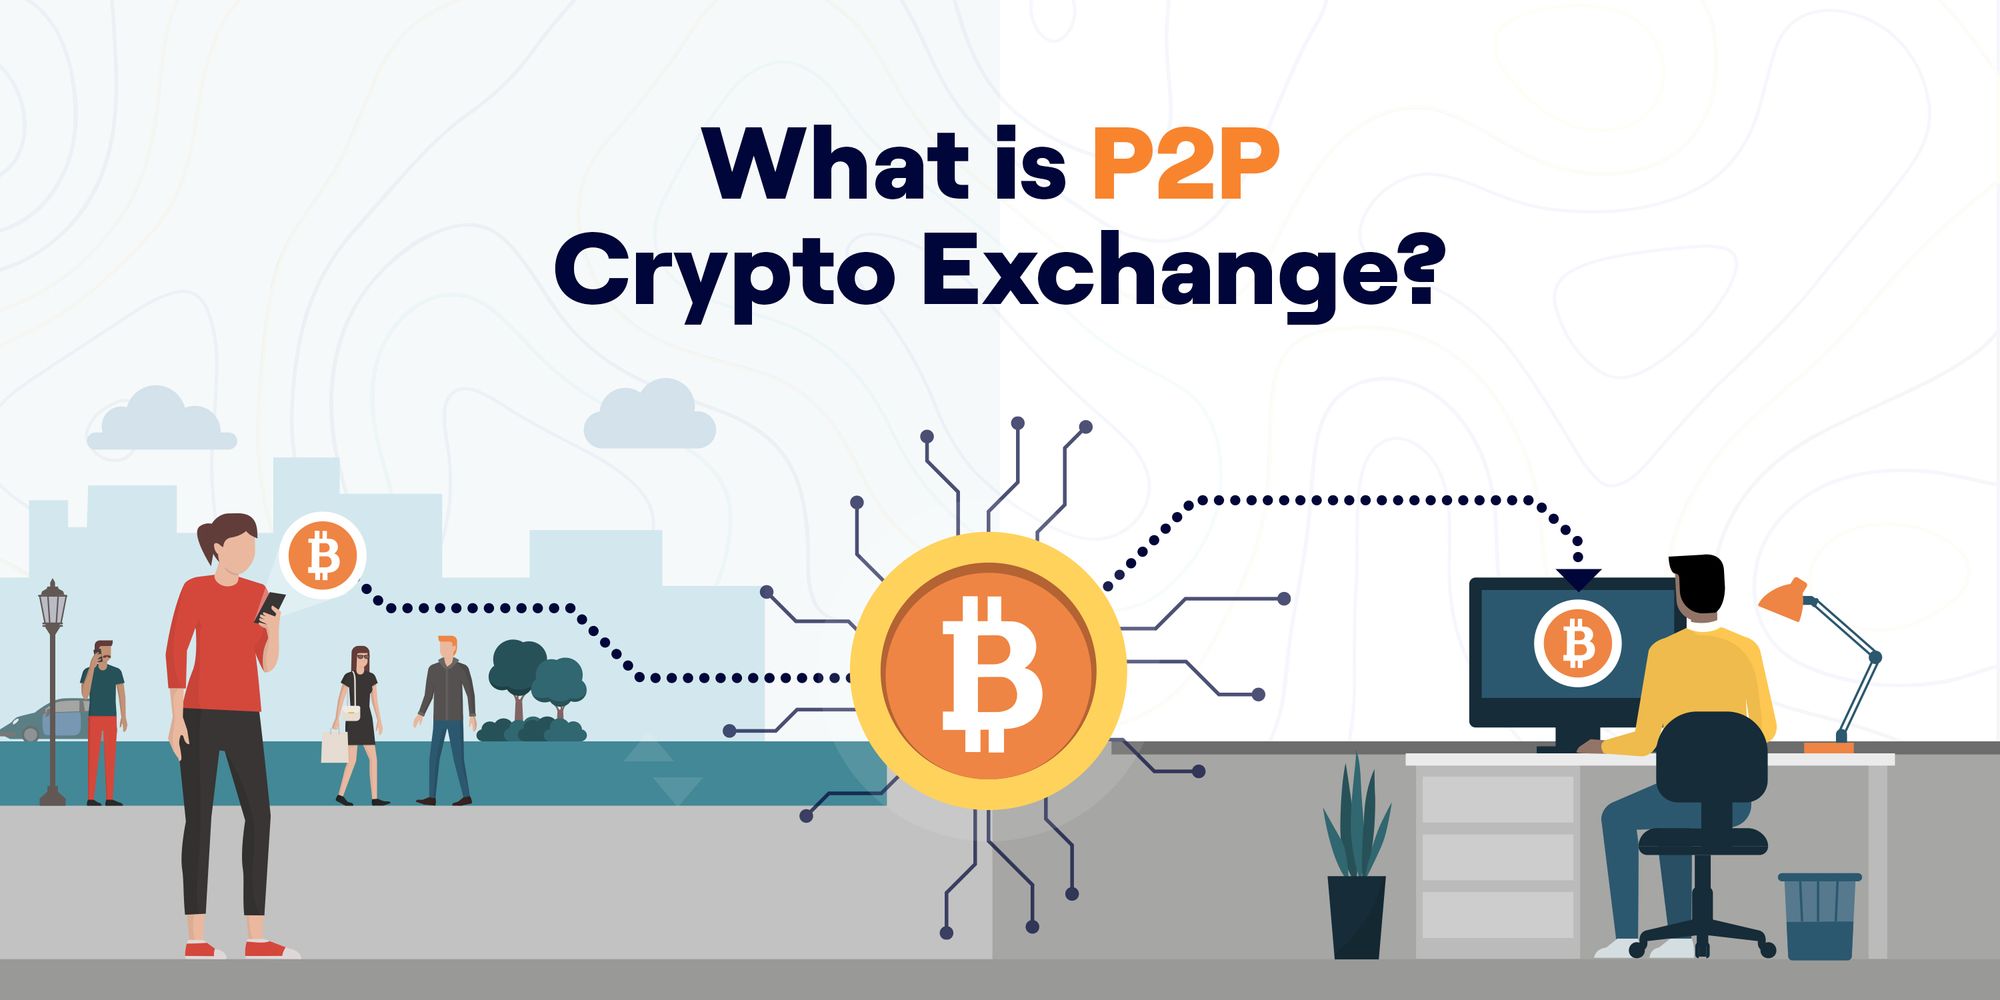 p2p crypto lending exchange